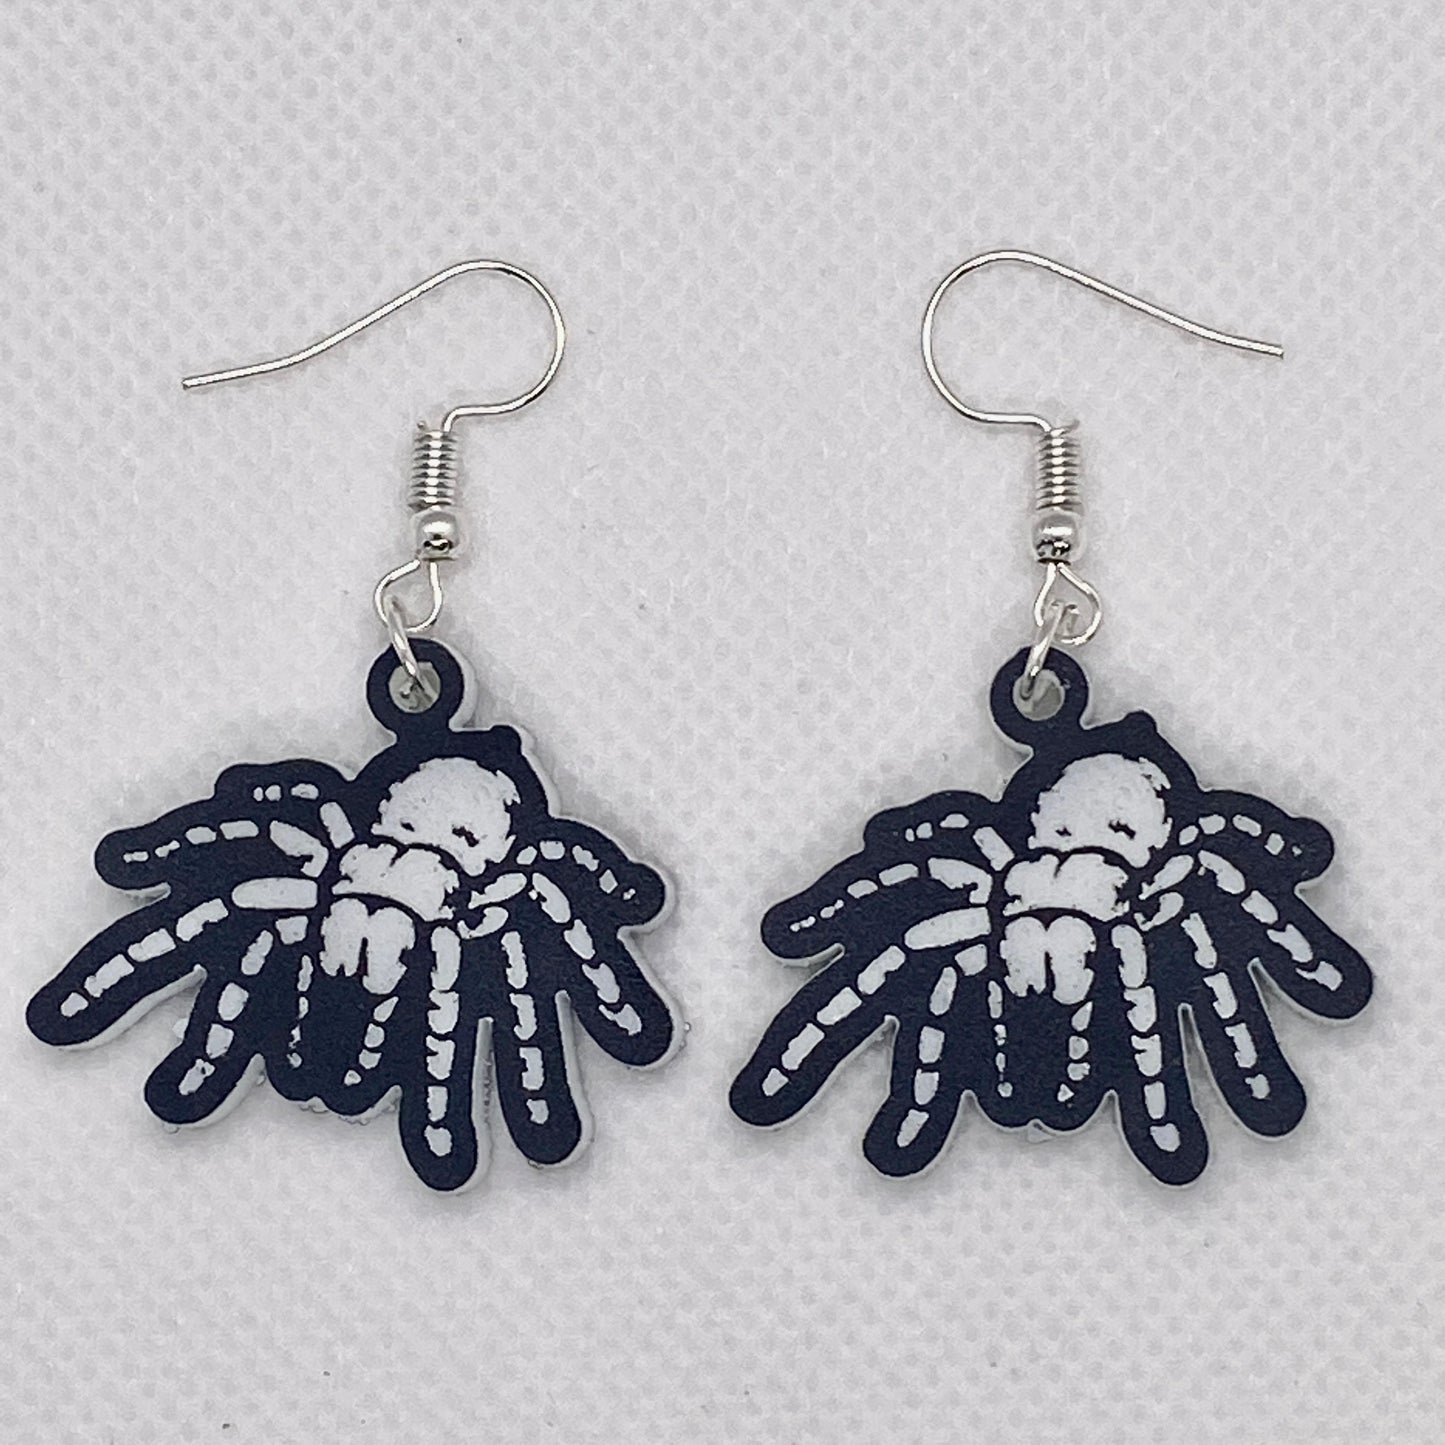 Tarantula Spider Acrylic Earrings